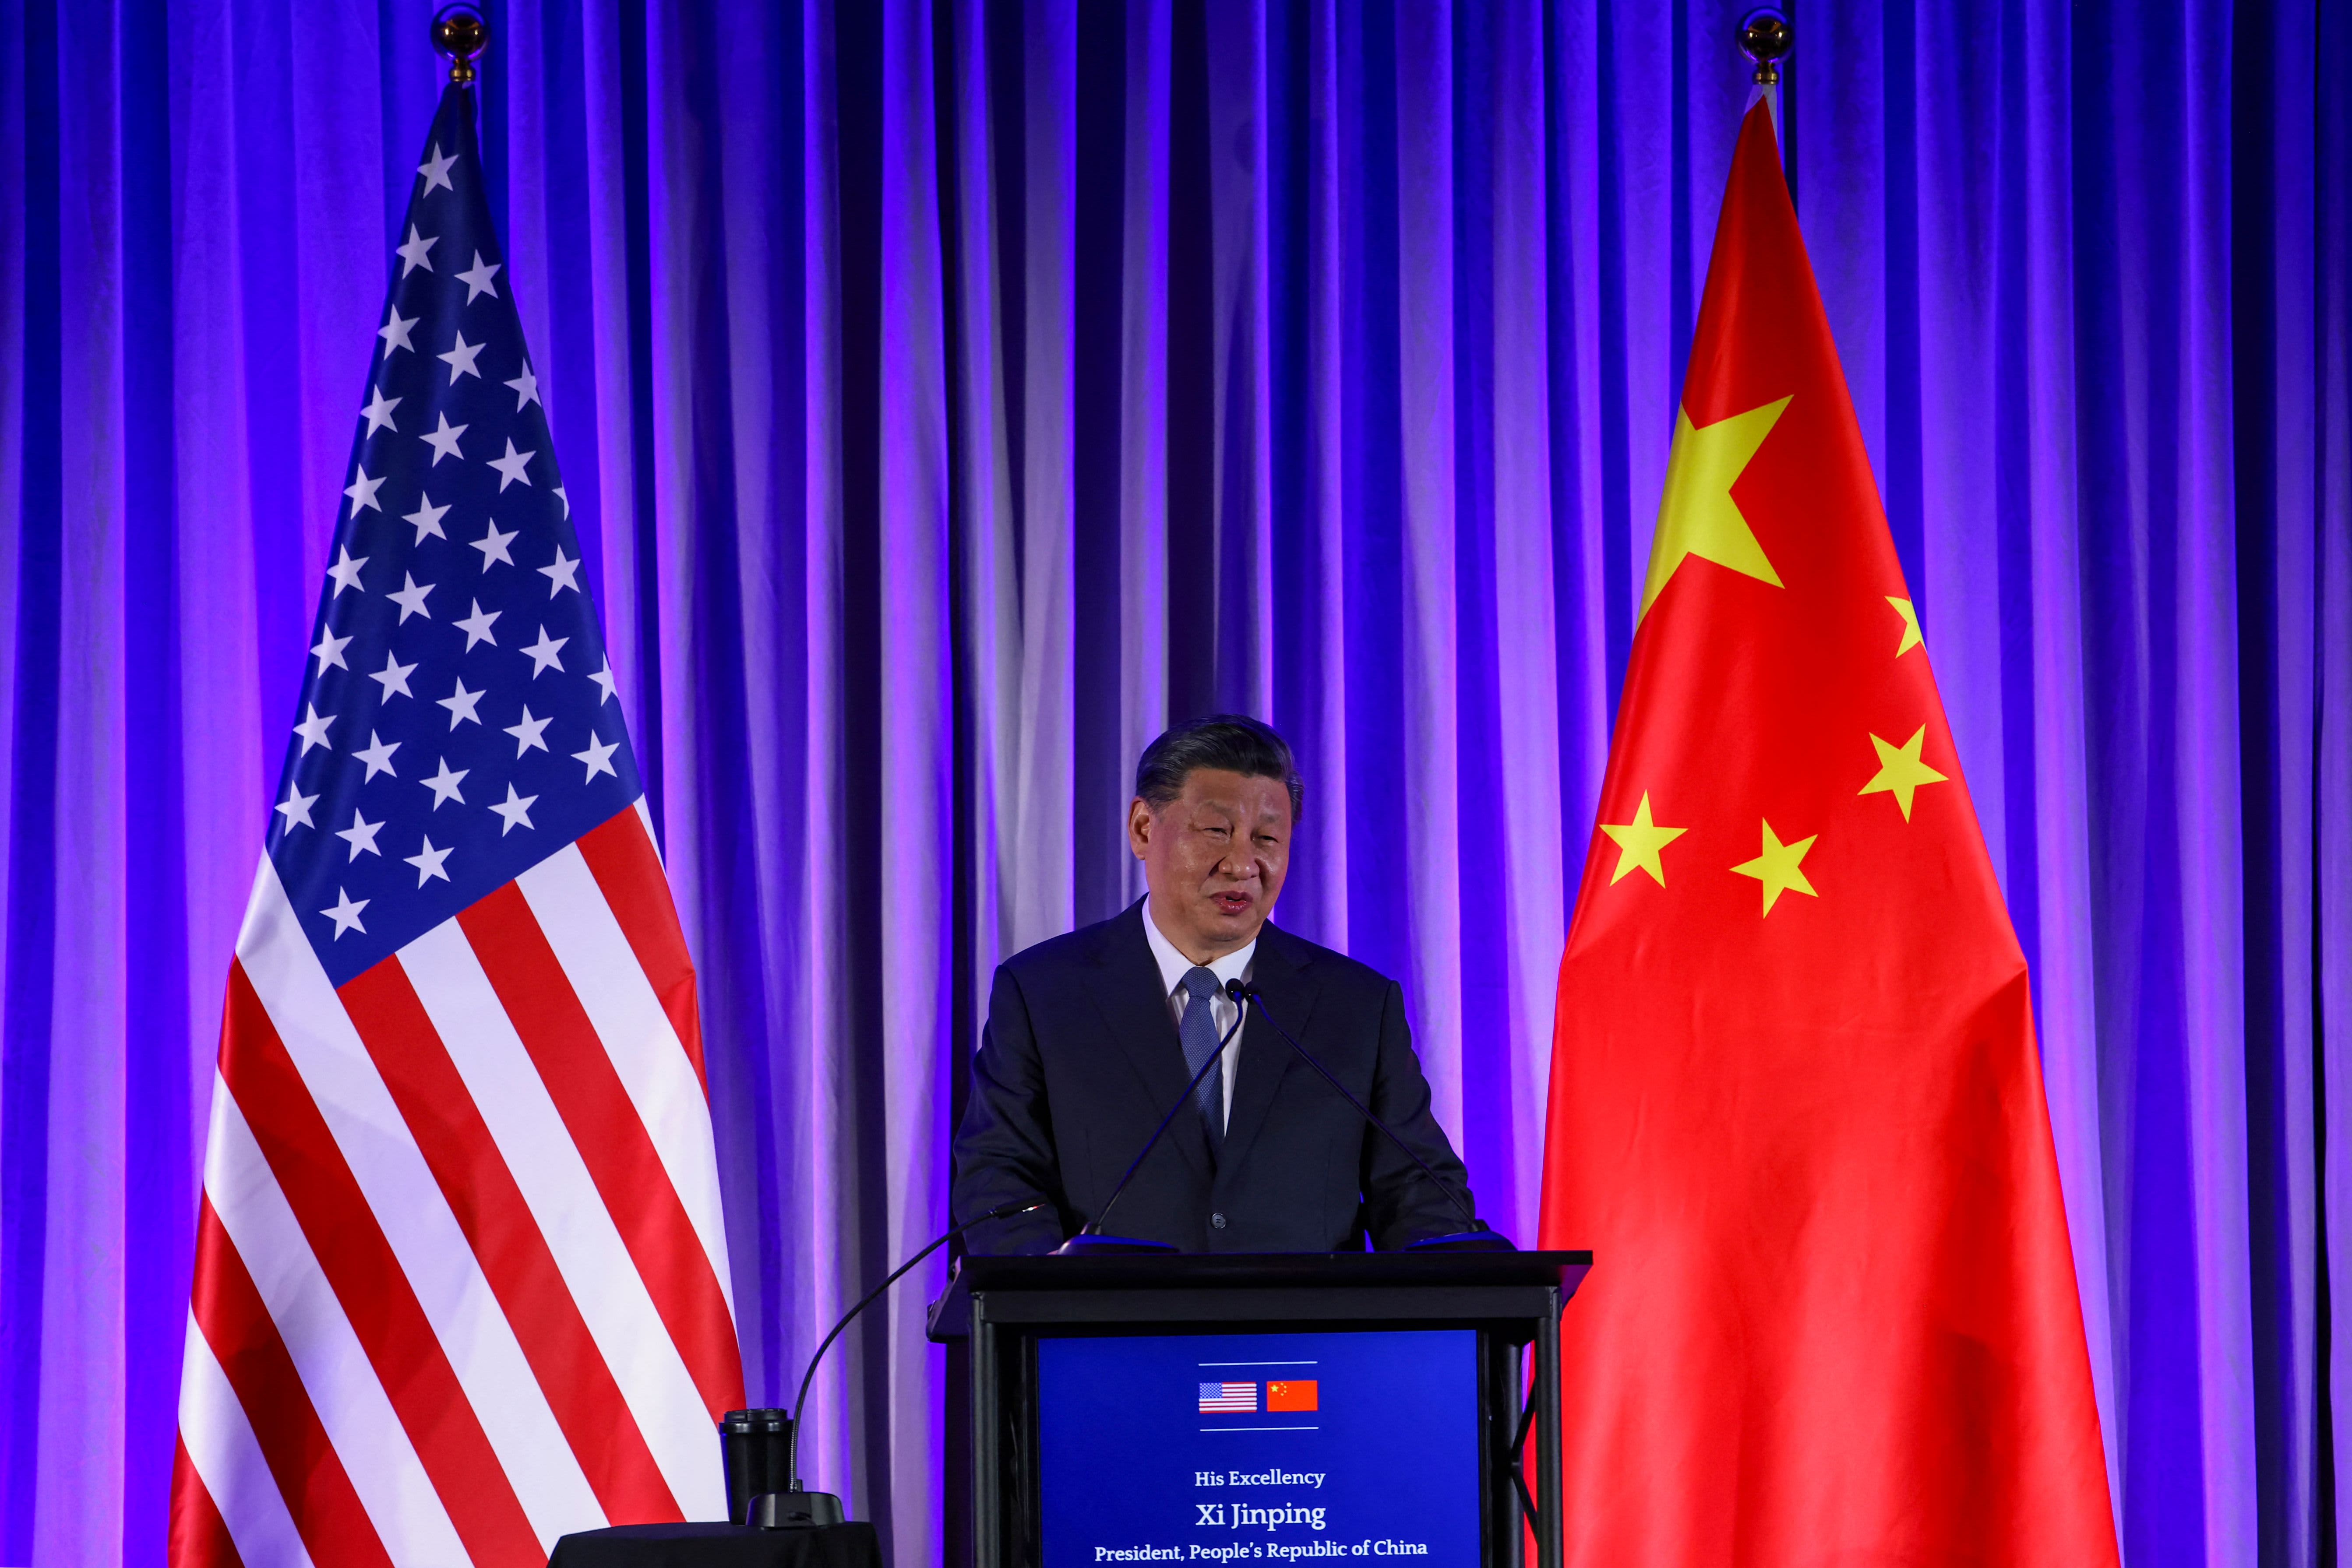 Il cinese Xi parla di un “futuro luminoso” per i legami bilaterali con gli amministratori delegati statunitensi